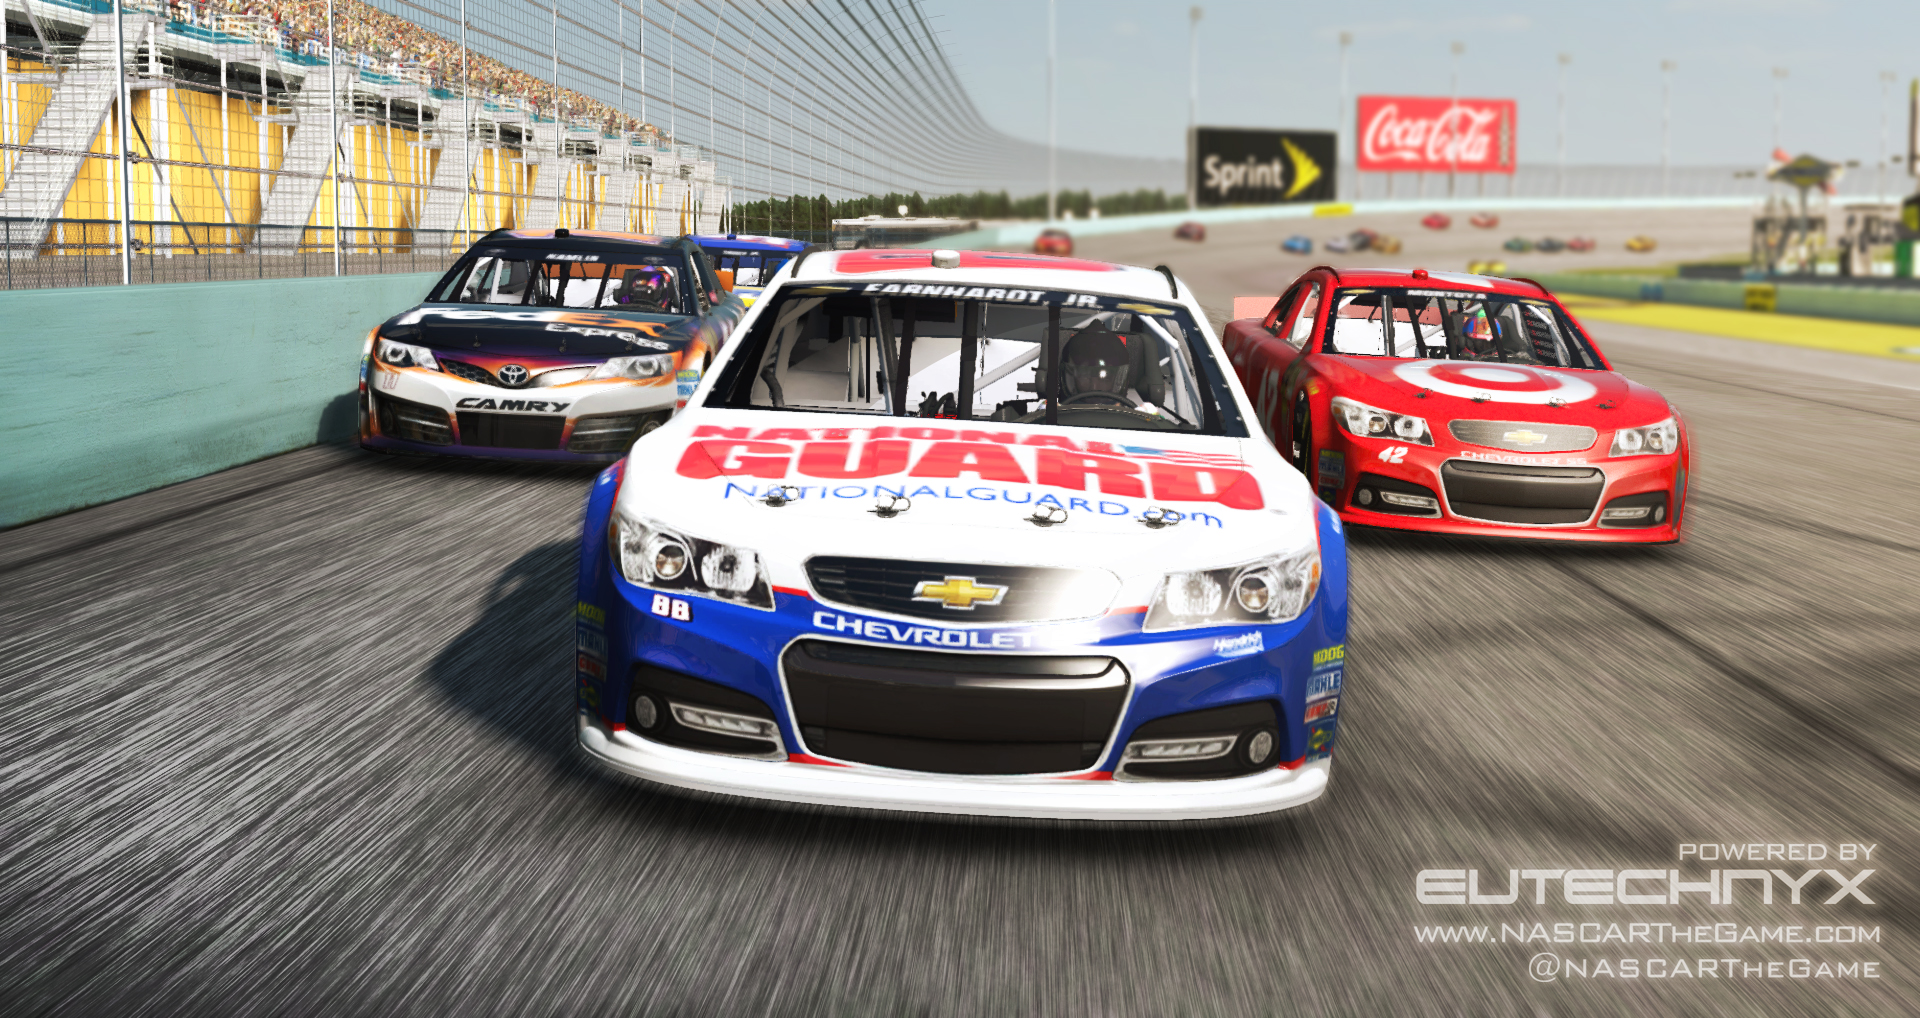 NASCAR The Game: 2013 dostępny na PC. Premierowe screeny i trailer w sieci